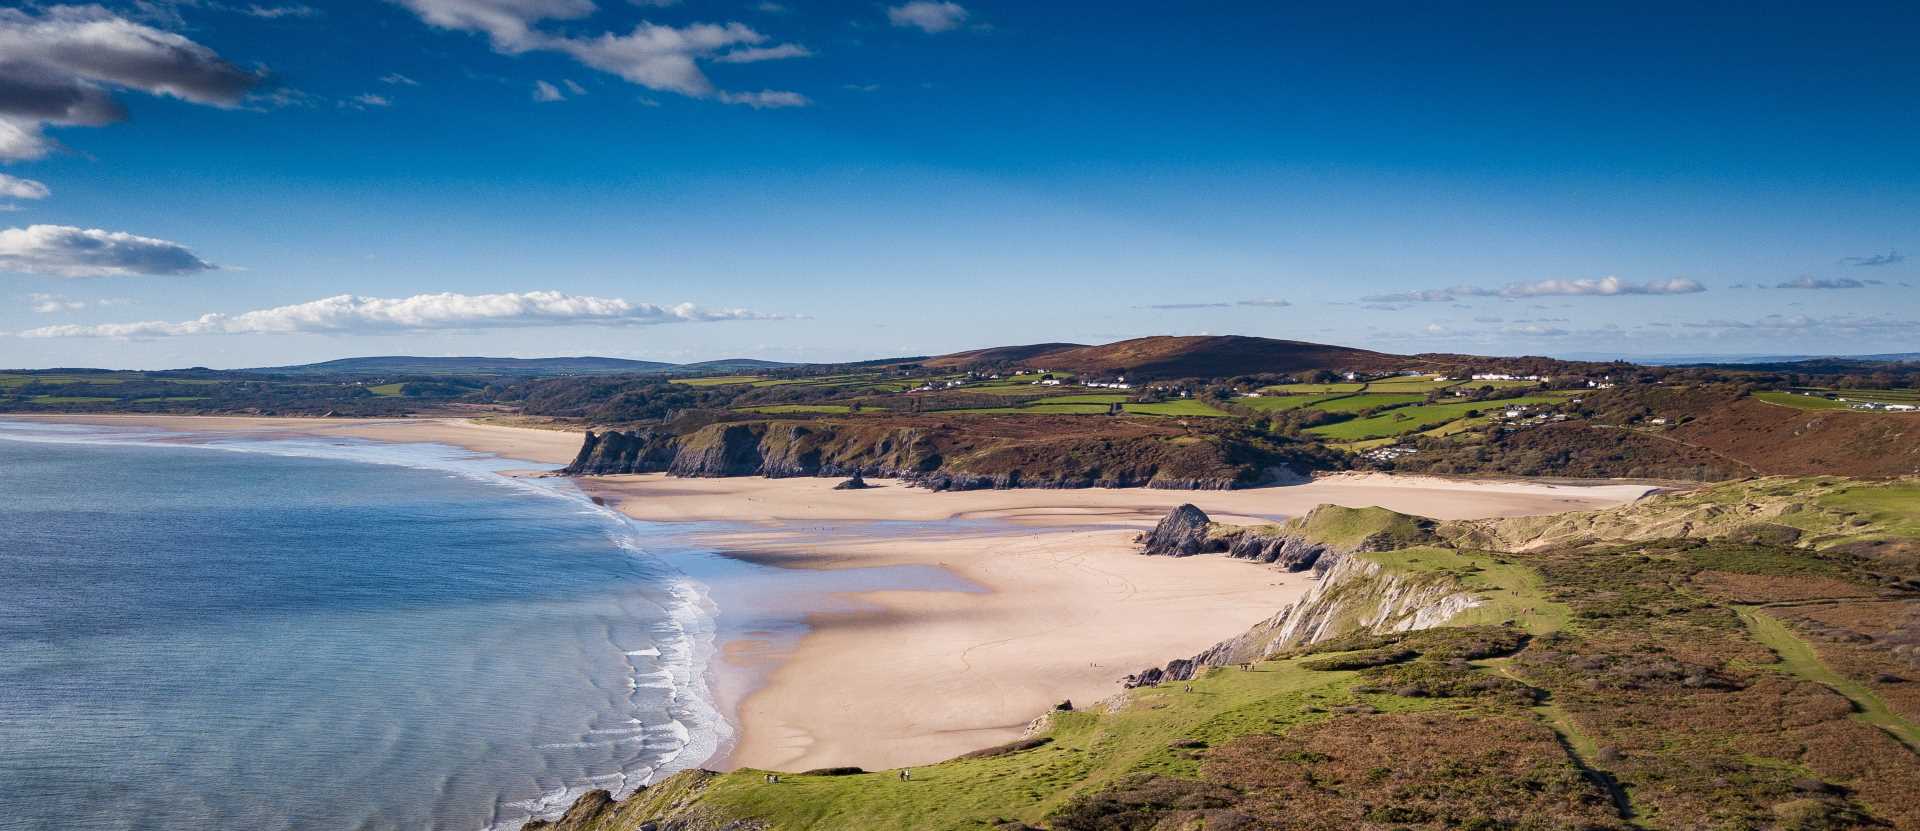 Bahía de Three Cliffs, Península de Gower, Swansea, Gales - Campings en Gales